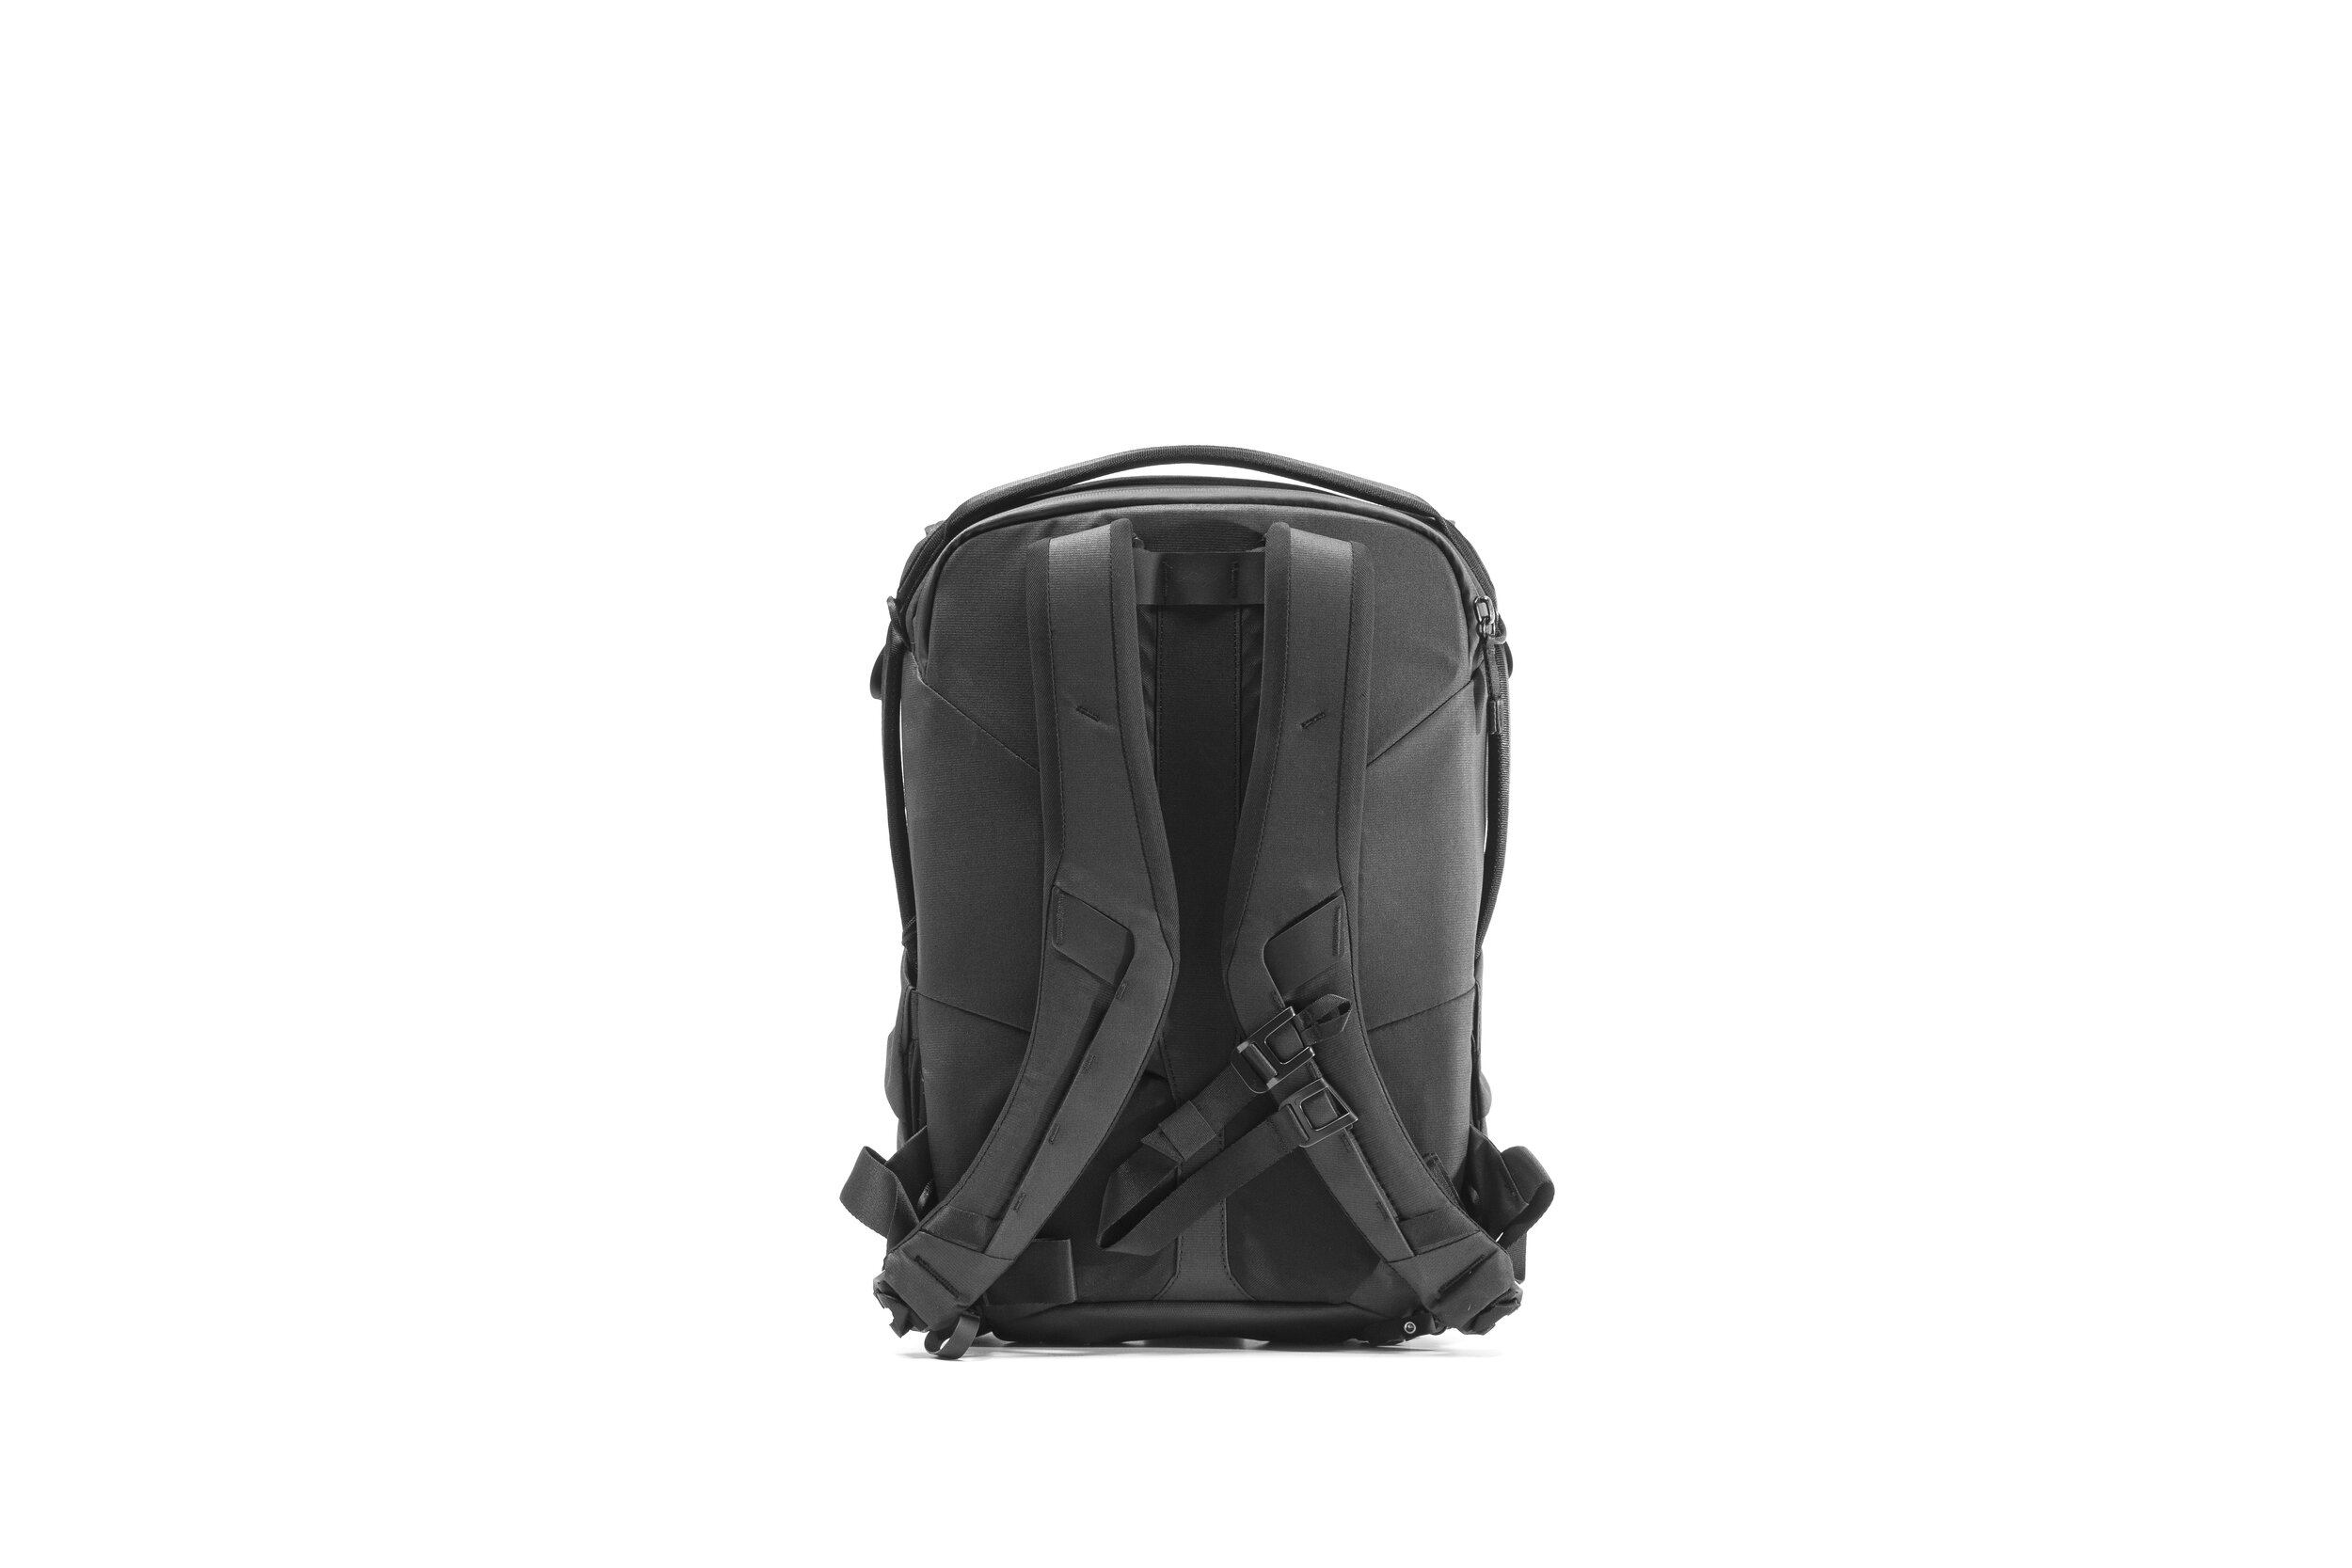 Peak Design Everyday Backpack Black Studio3.jpg